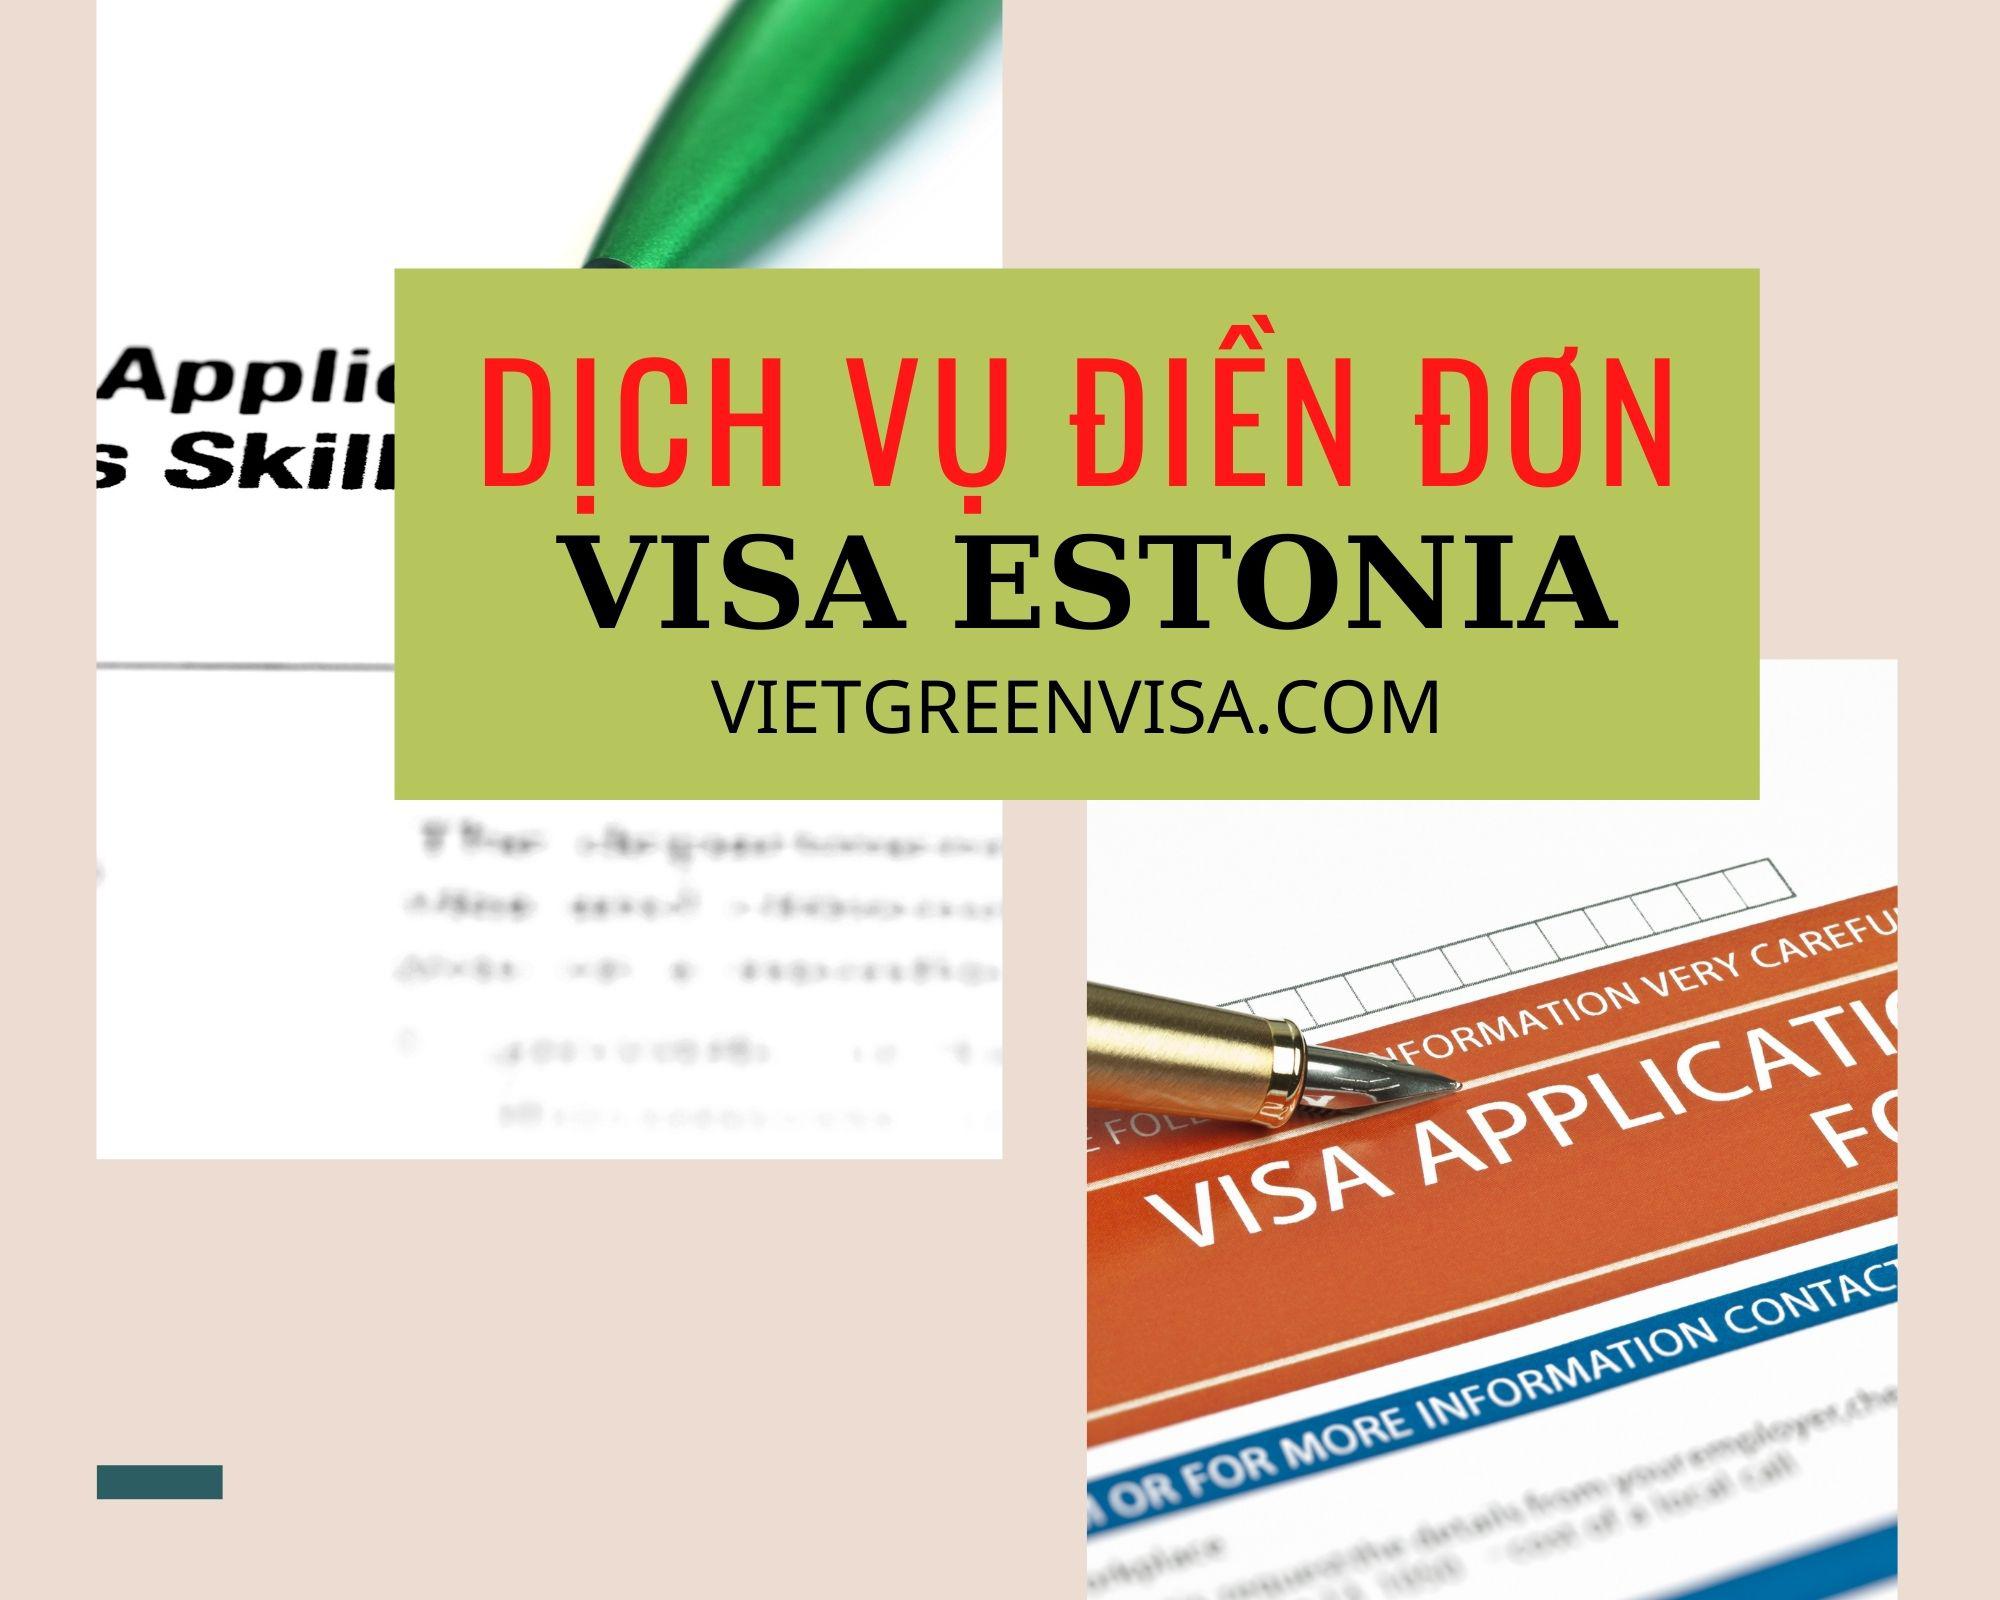 Hỗ trợ khai form, điền đơn visa Estonia online 